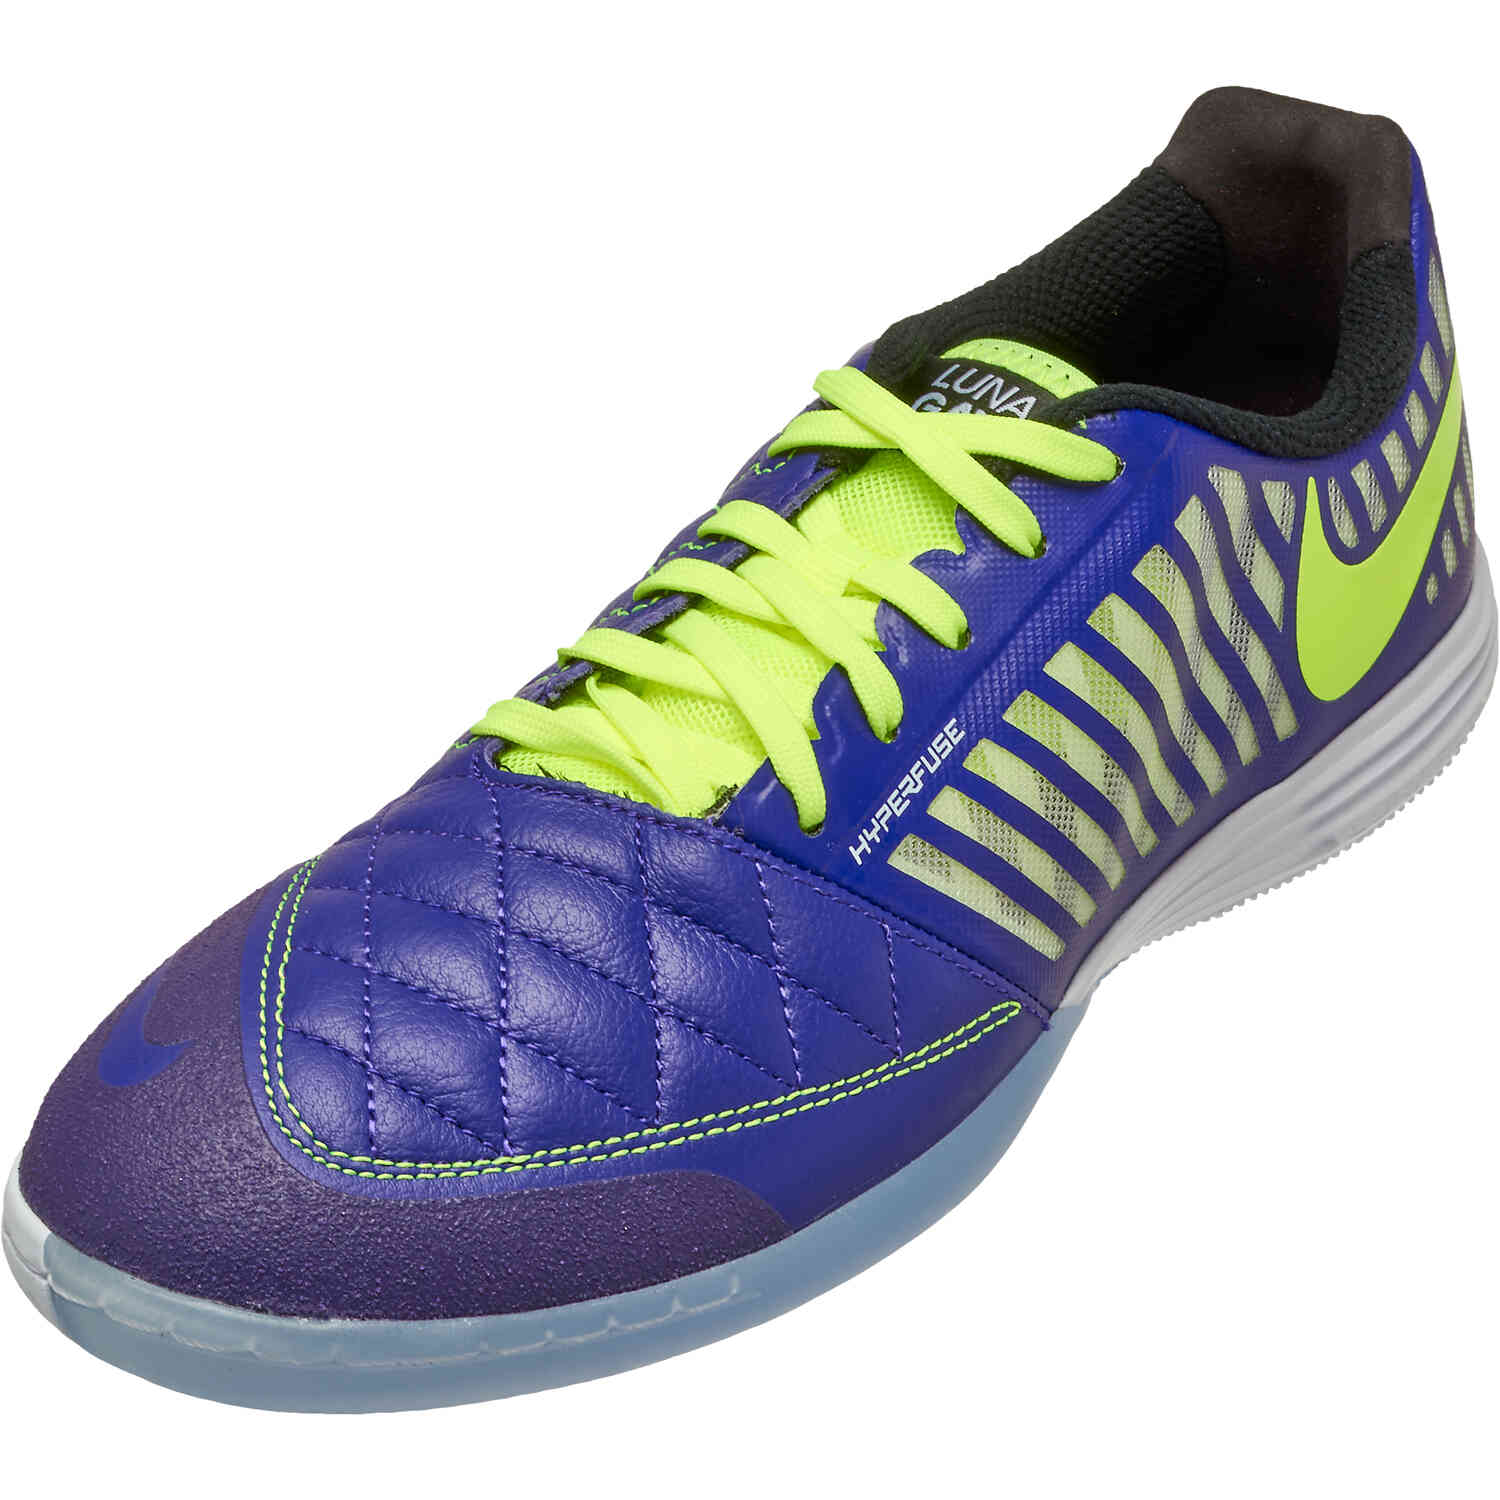 Actuación enfermero comunicación Nike Lunar Gato II IC Indoor Soccer Shoes - Electro Purple & Volt with  Black with White - Soccer Master